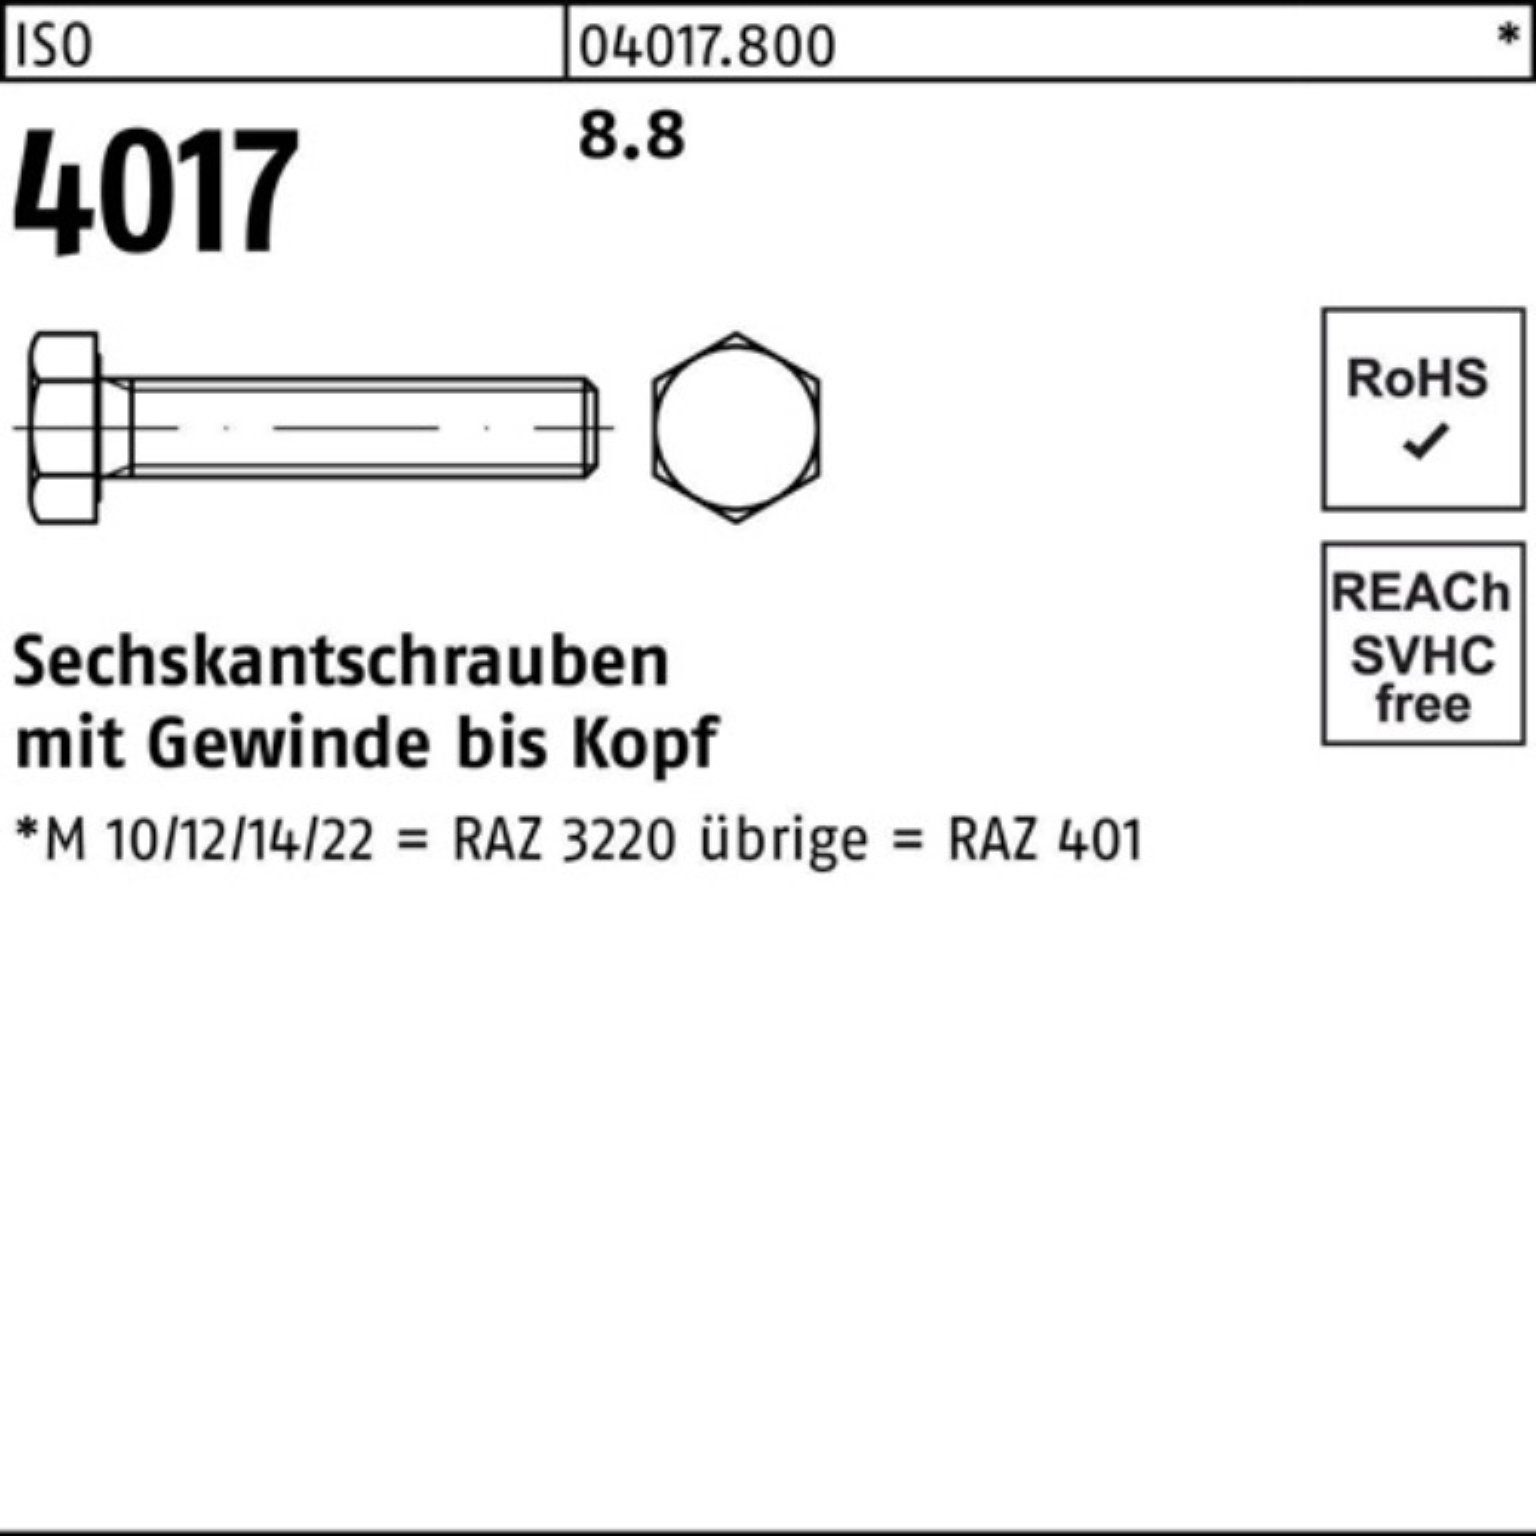 Bufab Sechskantschraube 200er 4017 8.8 401 ISO Sechskantschraube Pack M5x ISO 65 VG 200 Stück